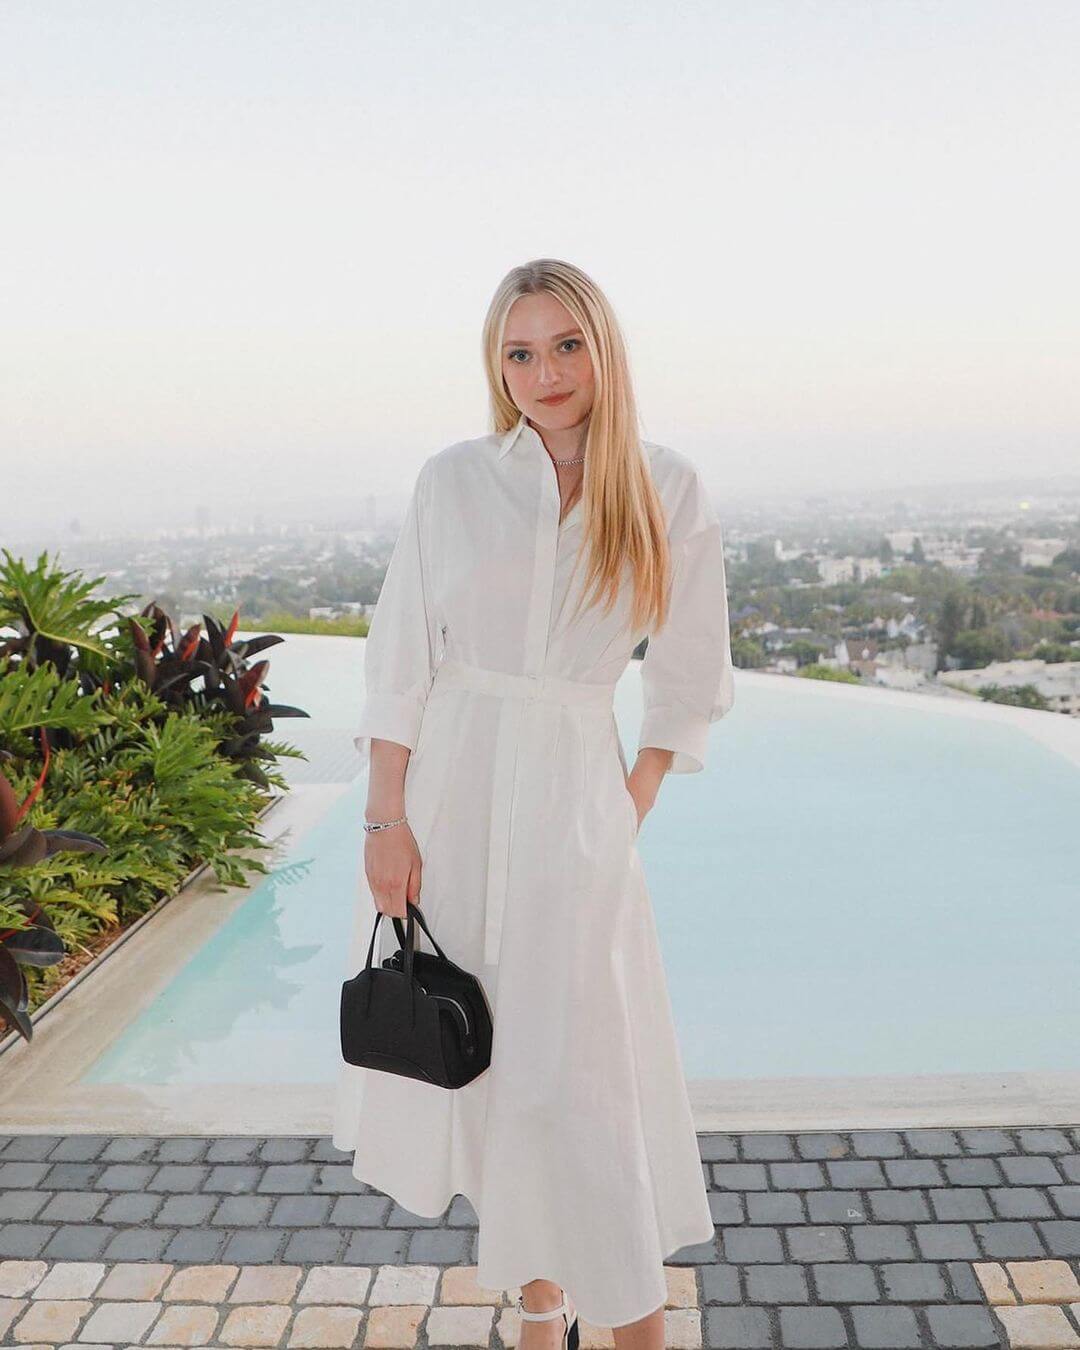 Dakota's Beautiful Look In Elegant White Dress